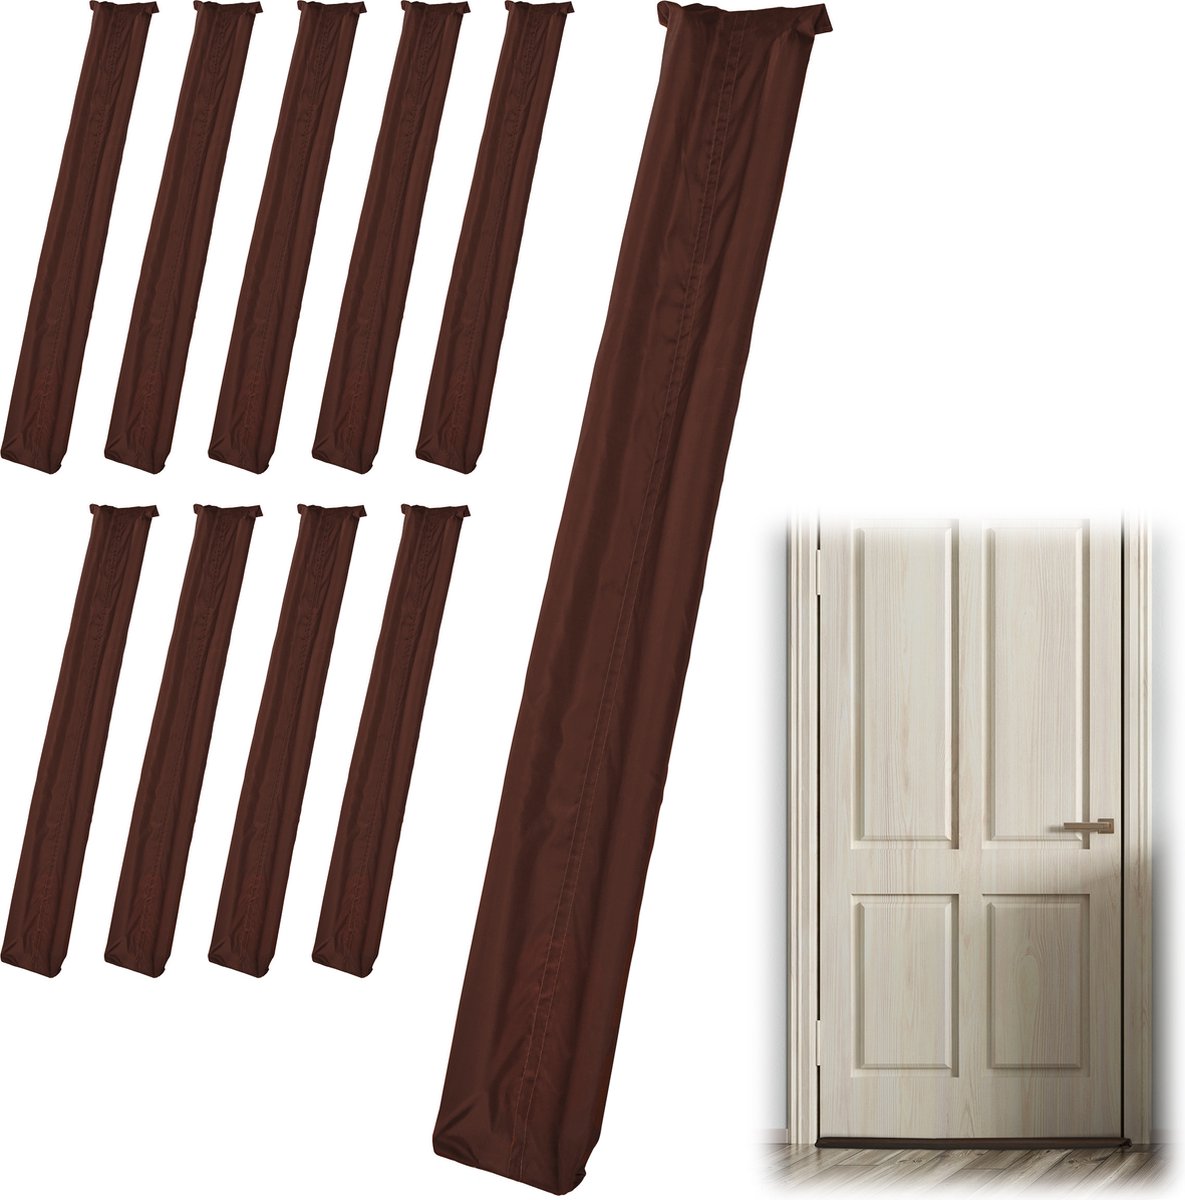 Relaxdays 10x tochtstopper deur - tochtstrip - tot 8 cm dikke deuren - tochtwering bruin